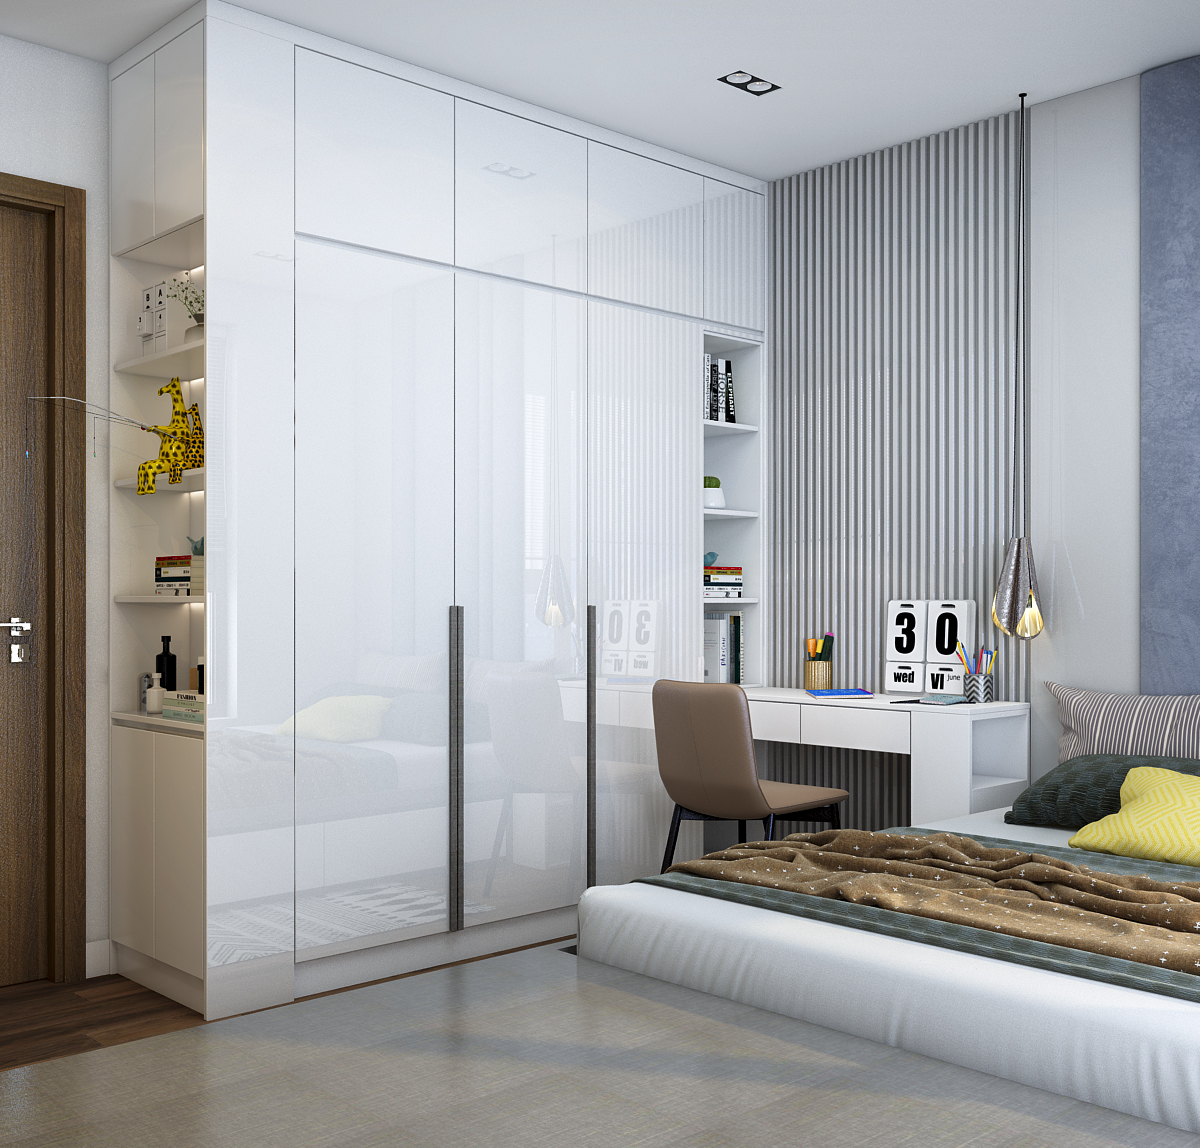 Thiết kế concept nội thất phòng ngủ nhỏ Căn hộ 3PN tại Vinhomes Grand Park phong cách Hiện đại Modern